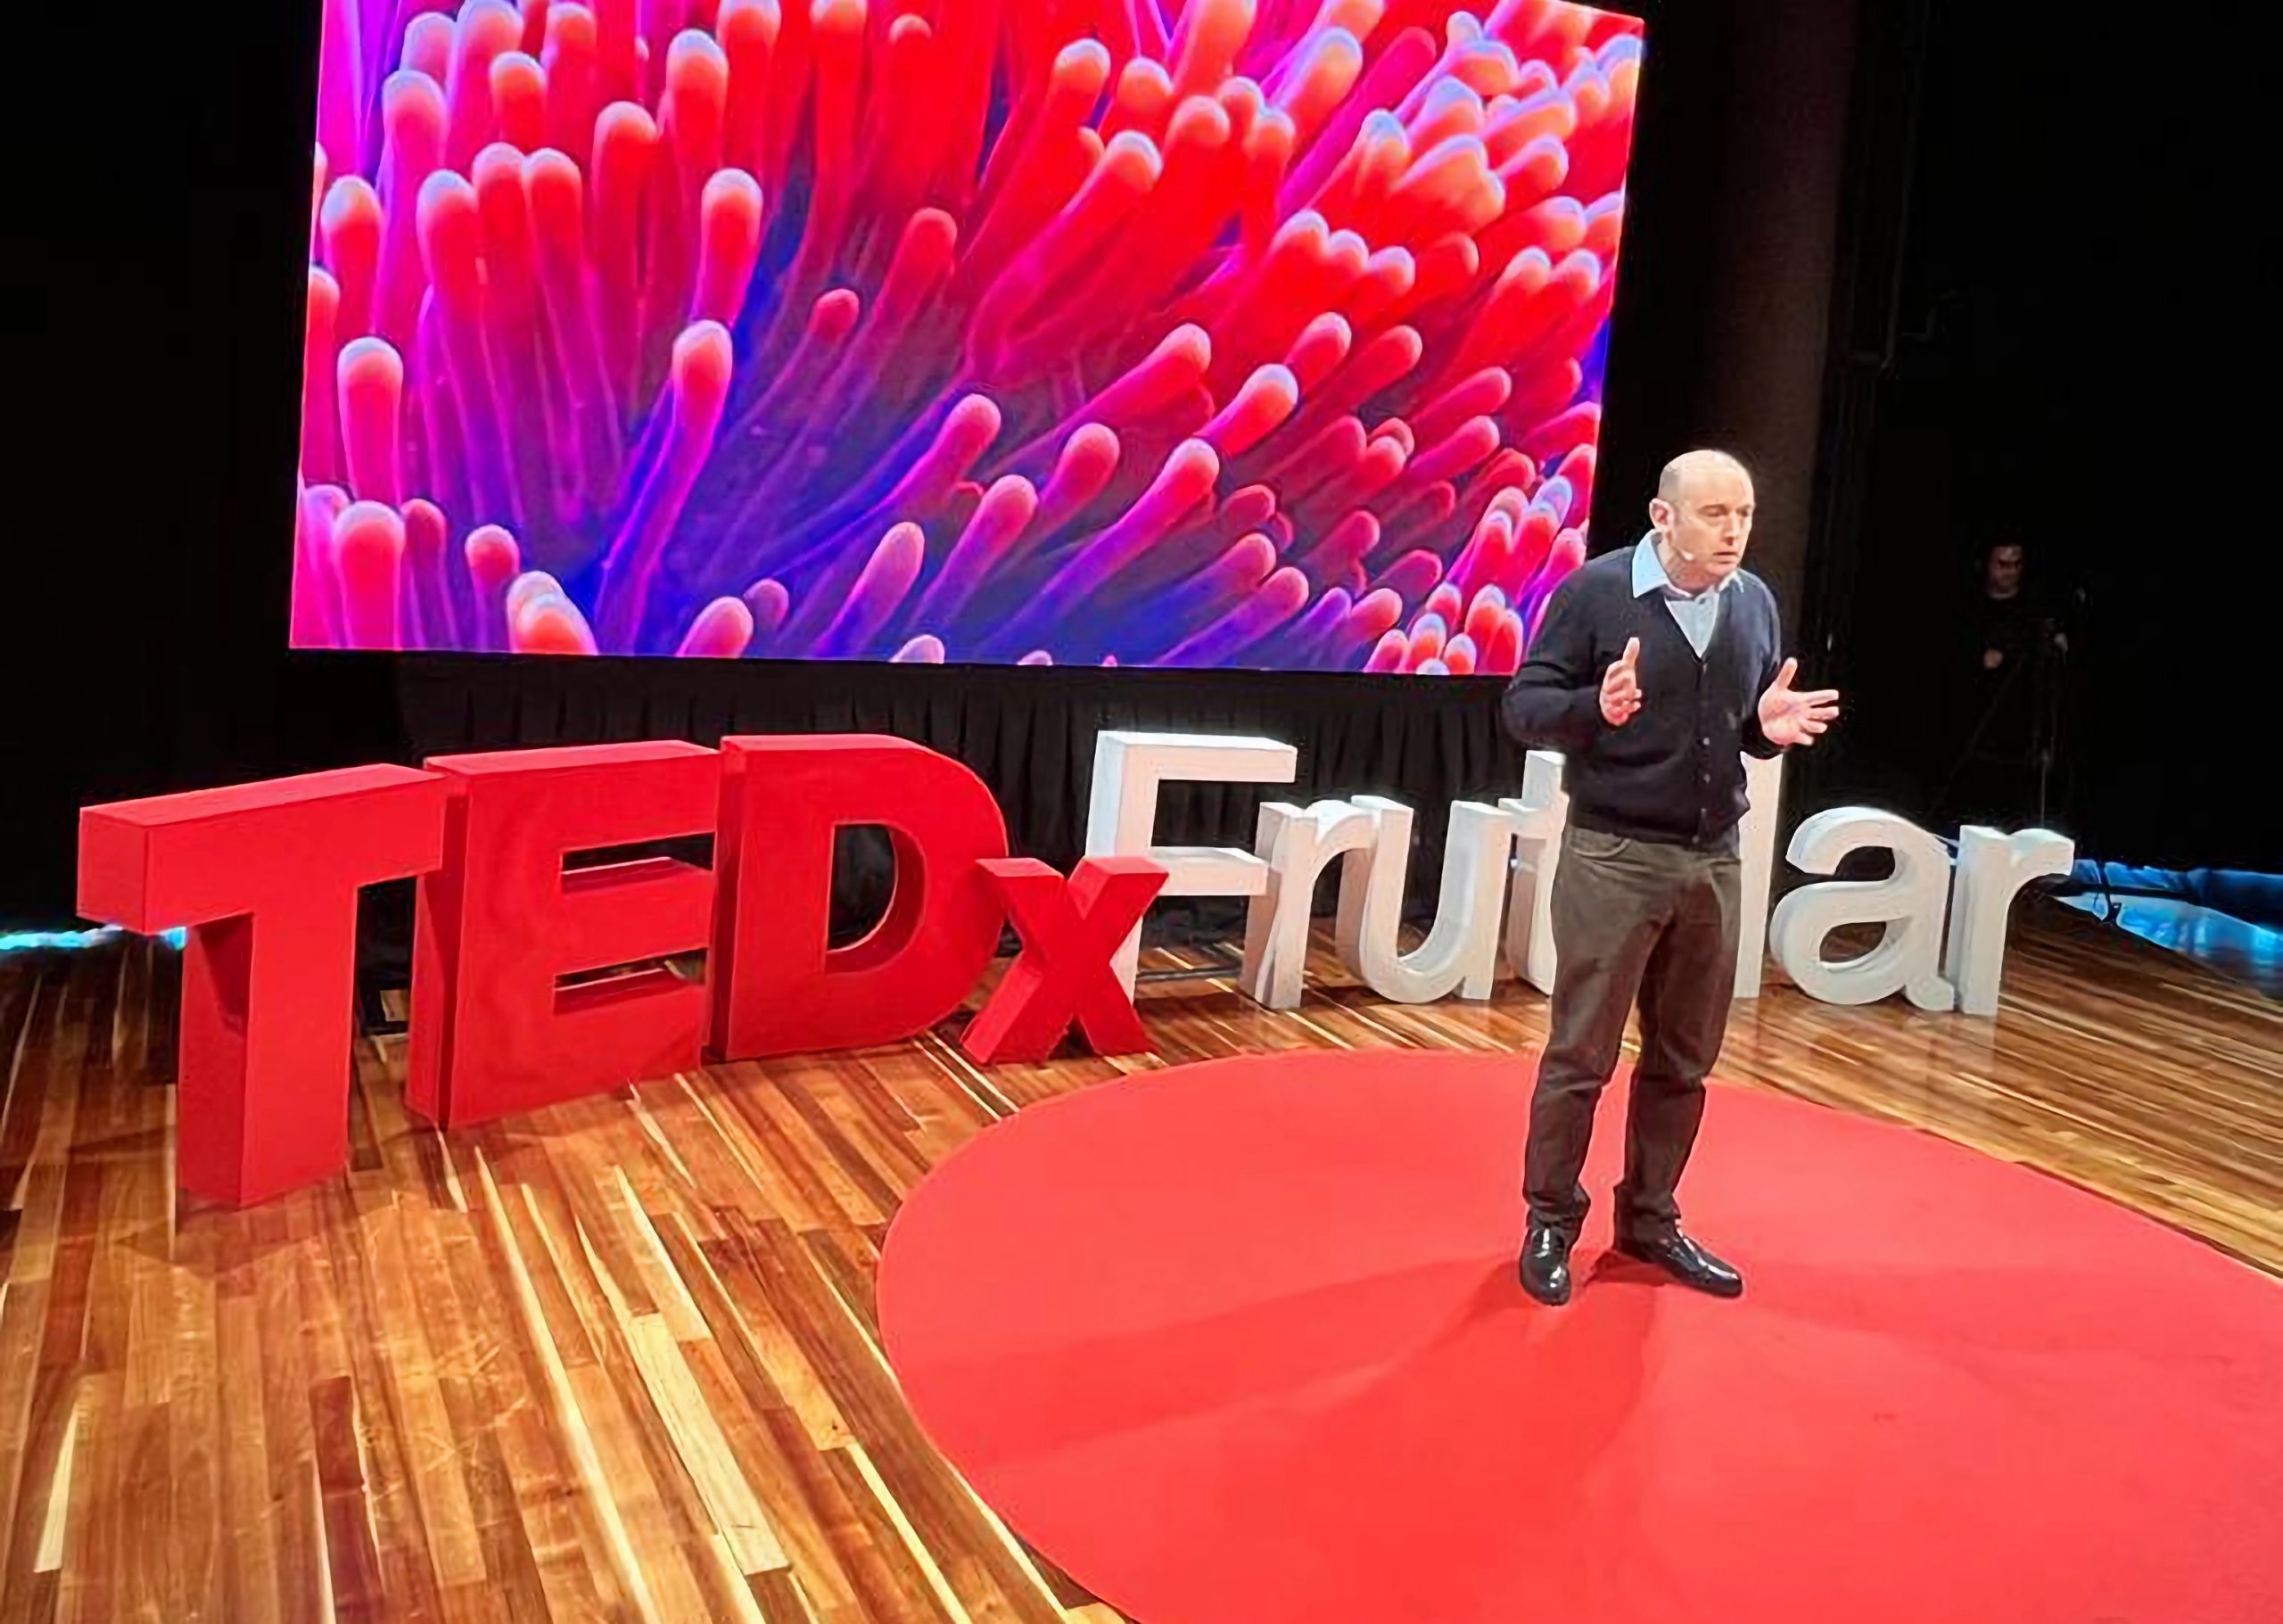 Innovación, sostenibilidad y emprendimiento de la región marcaron tendencia en TEDx Frutillar